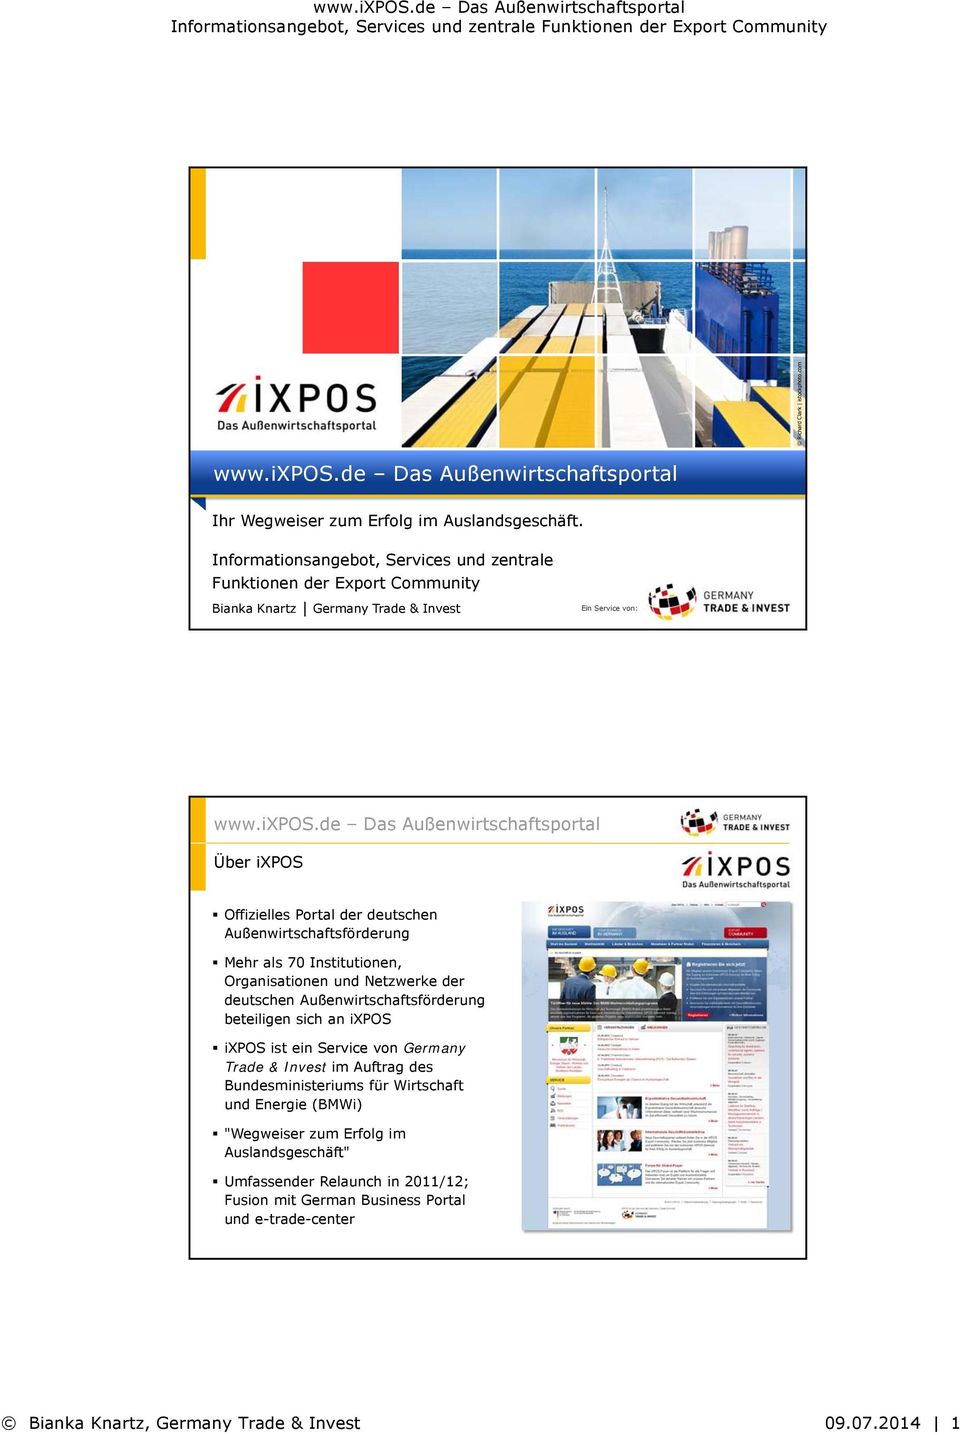 Außenwirtschaftsförderung Mehr als 70 Institutionen, Organisationen und Netzwerke der deutschen Außenwirtschaftsförderung beteiligen sich an ixpos ixpos ist ein Service von